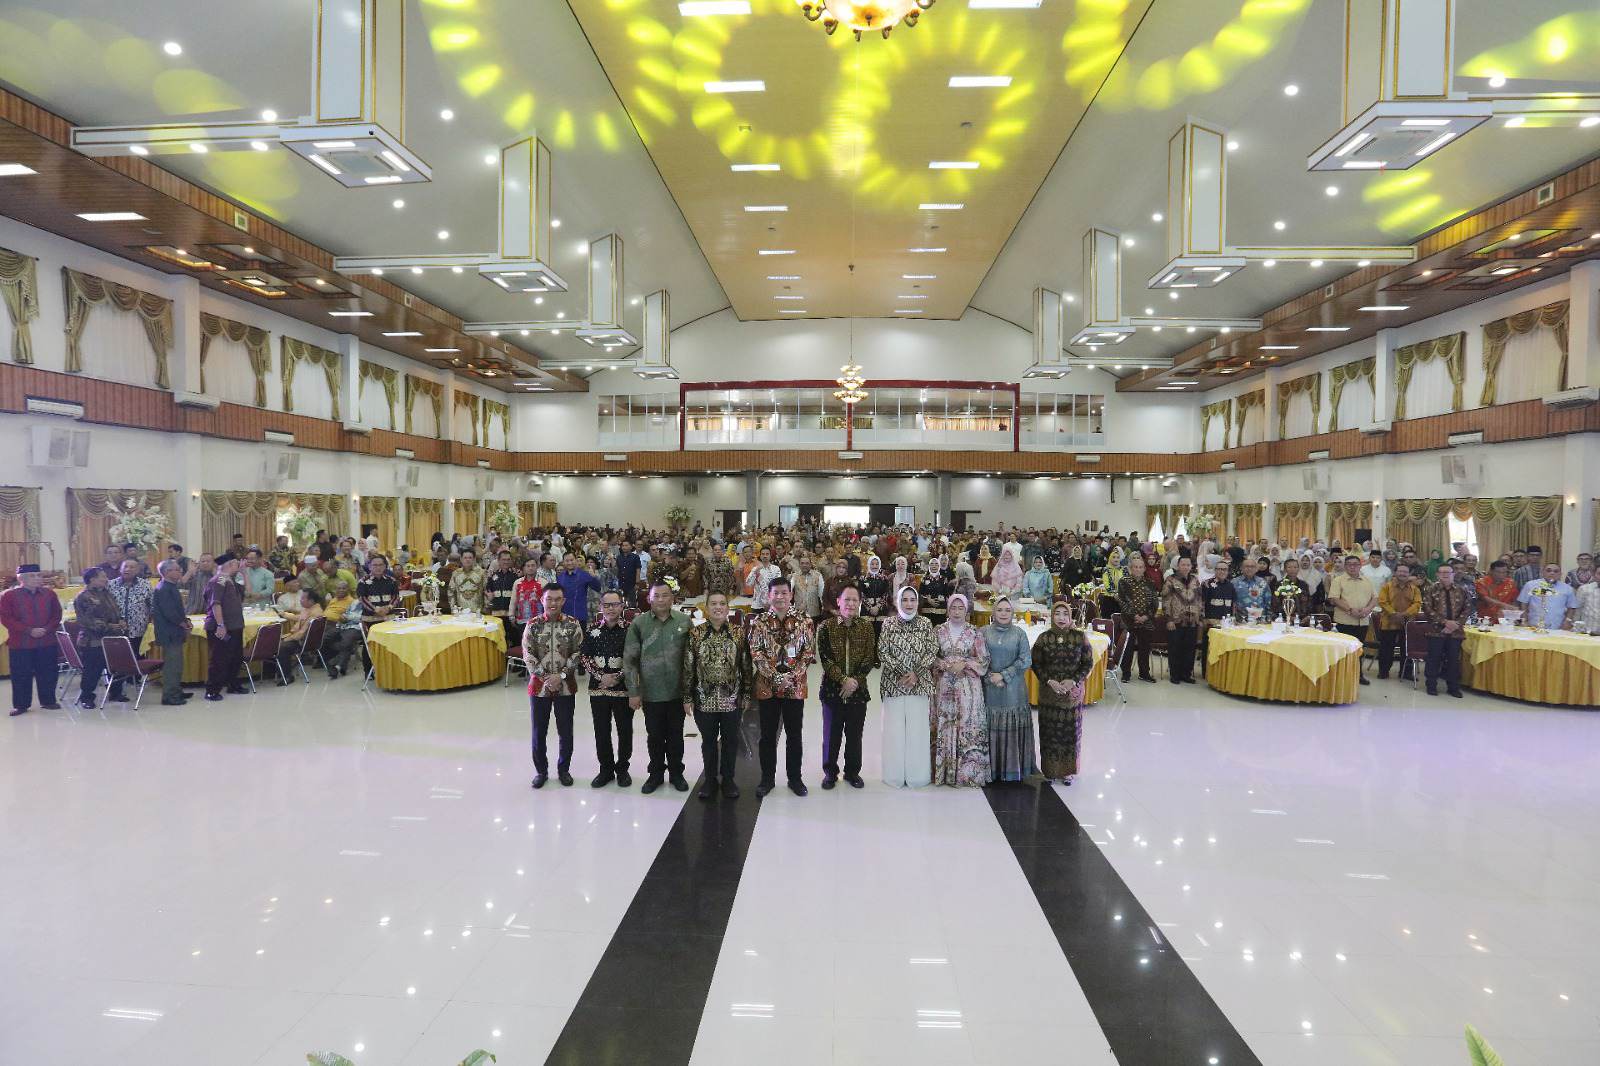 Perkokoh Jiwa Korsa Alumni Pendidikan Tinggi, Kepamongprajaan Lampung Gelar Halal Bihalal